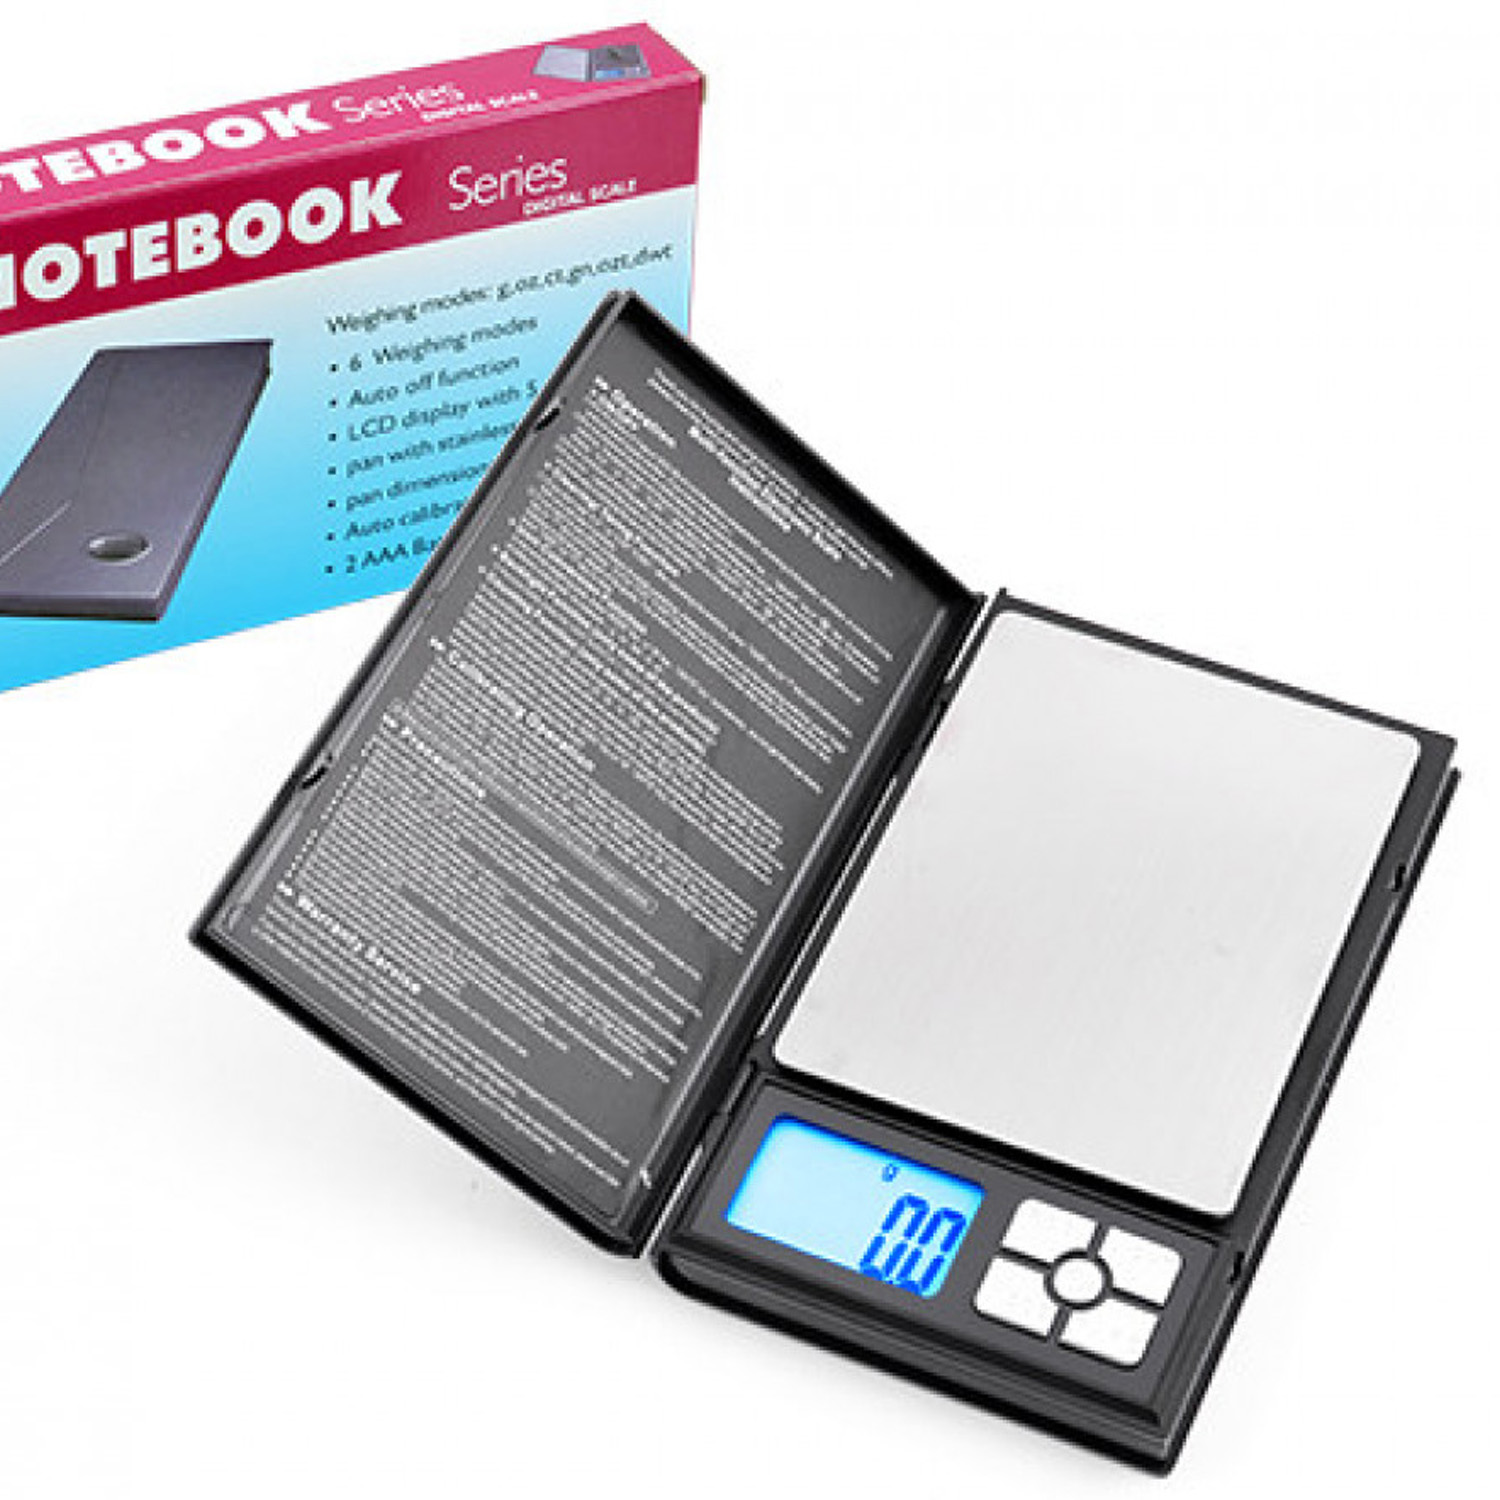 Ювелирные цифровые весы Notebook 1108-2 (2000g±0.1), фото